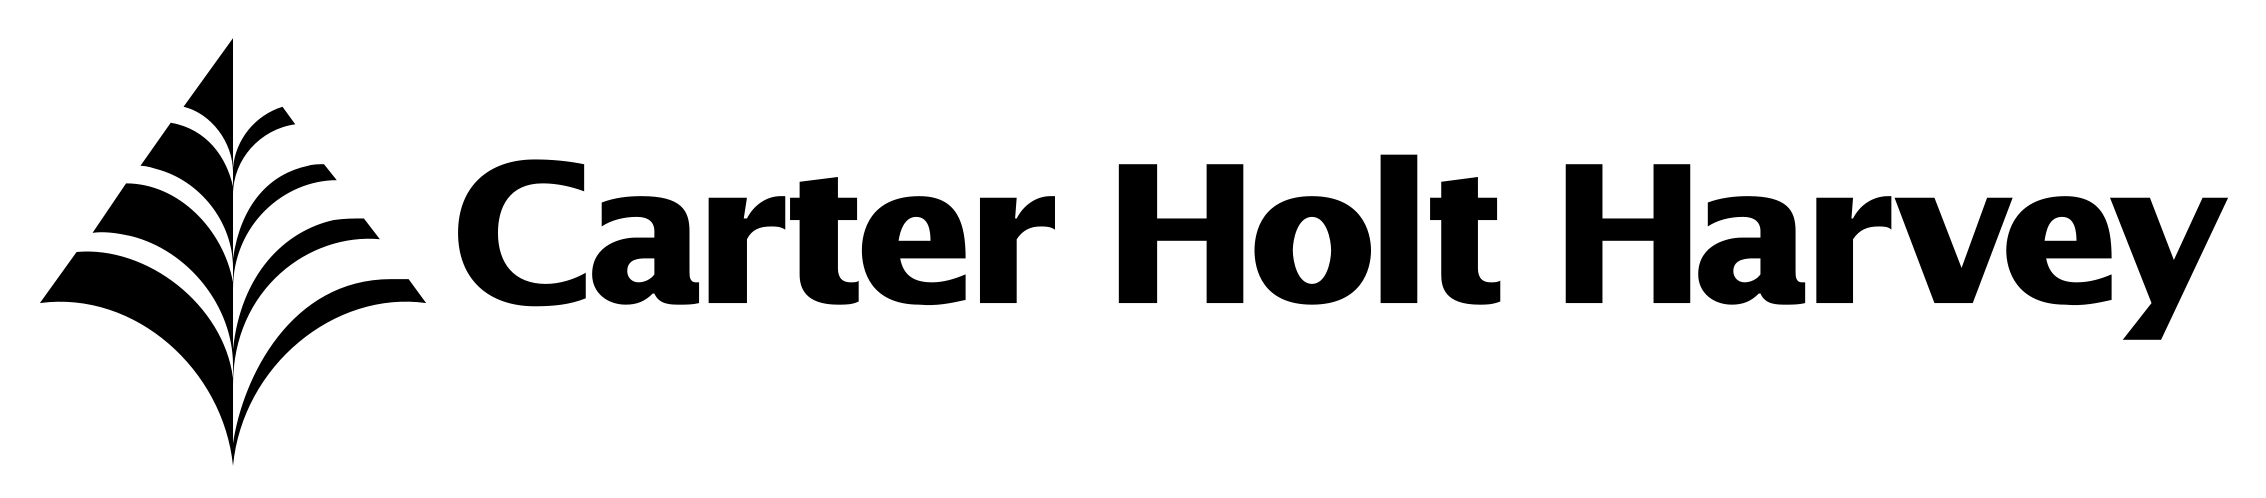 carter-holt-harvey-logo